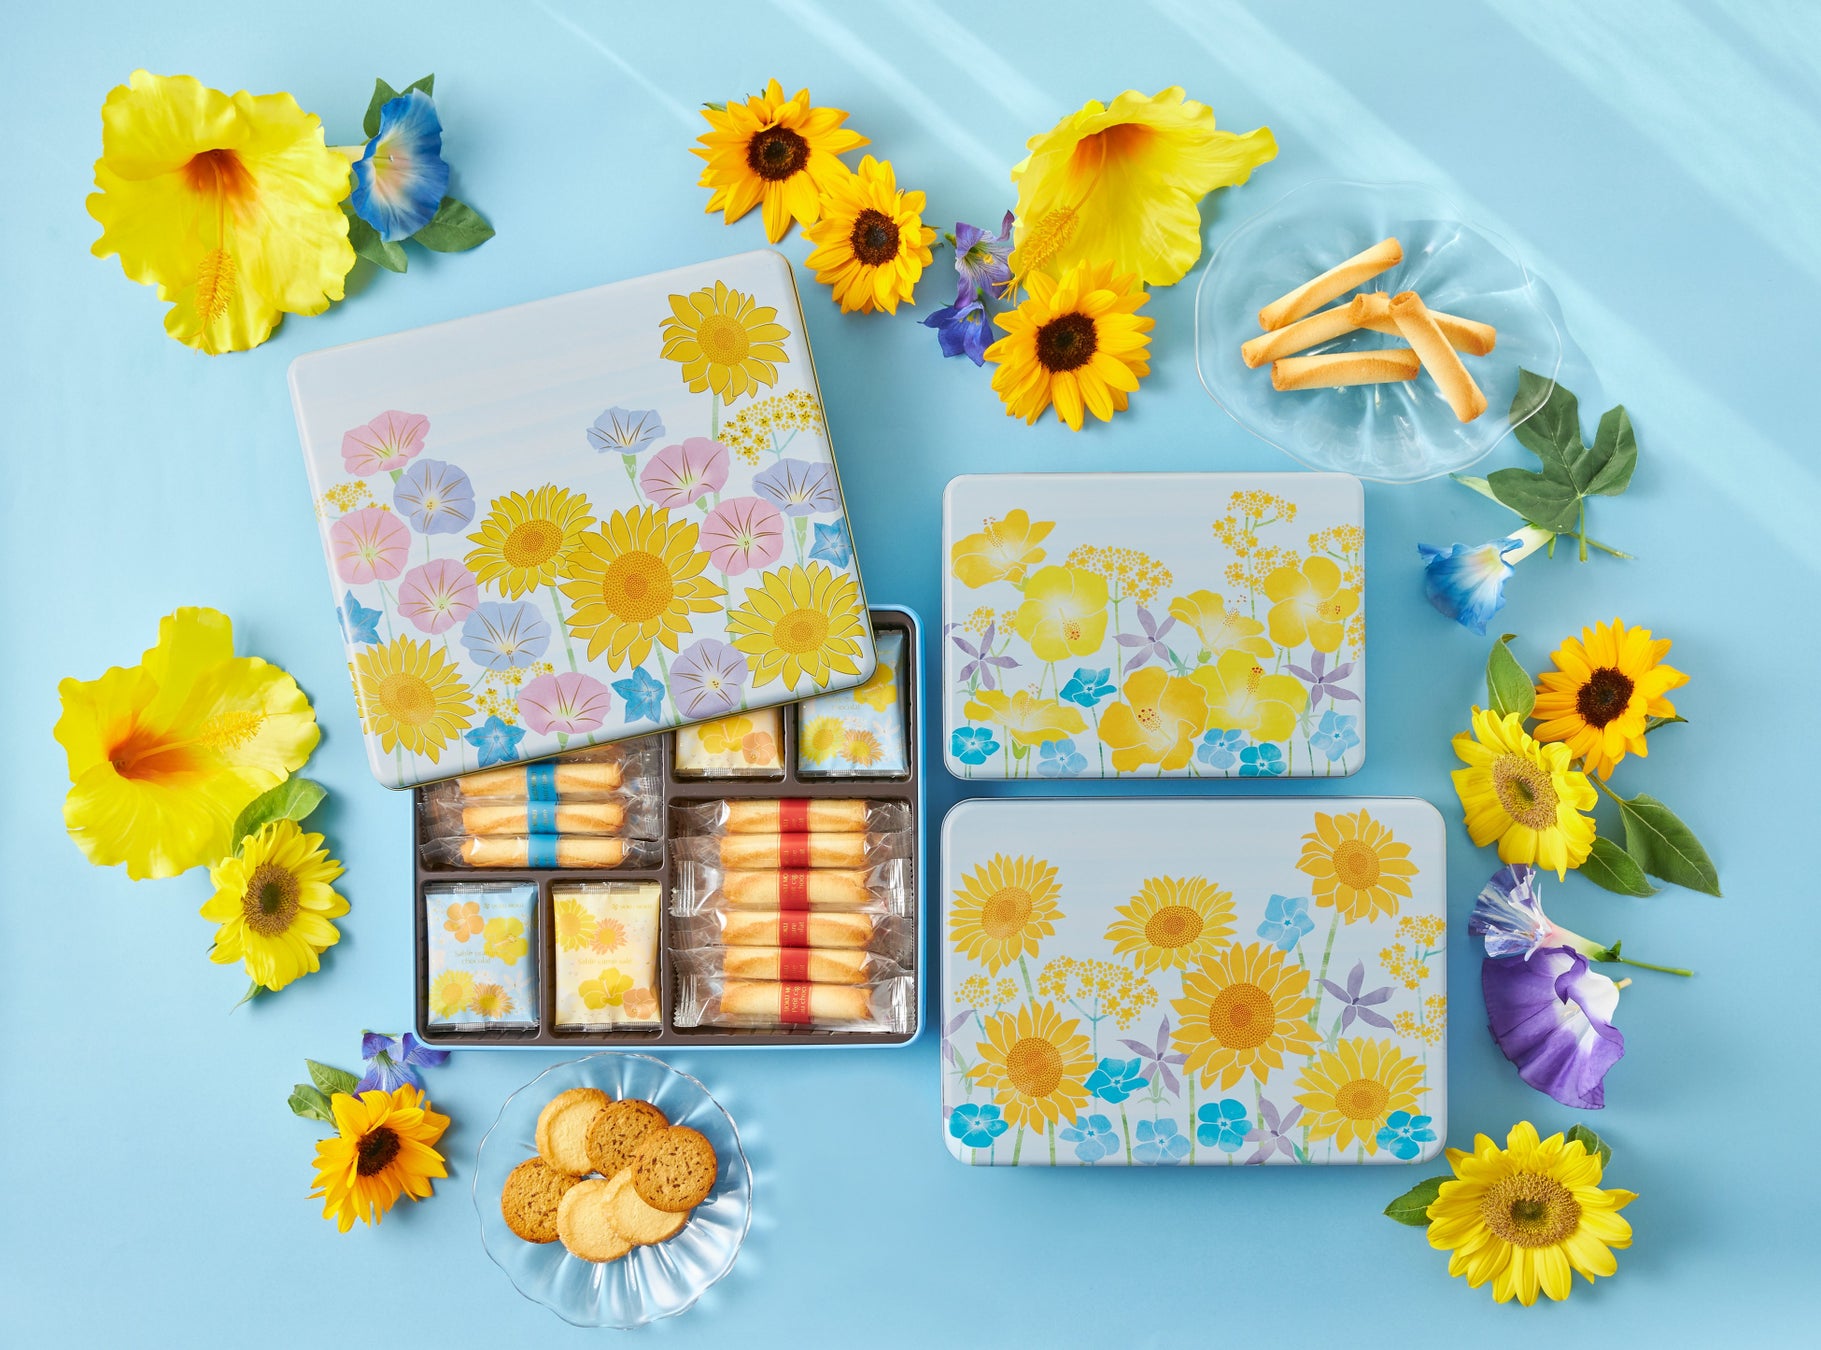 夏に咲きほこる花々をあしらった季節限定のクッキー缶「カドー ドゥ レテ」6月15日(木)より発売